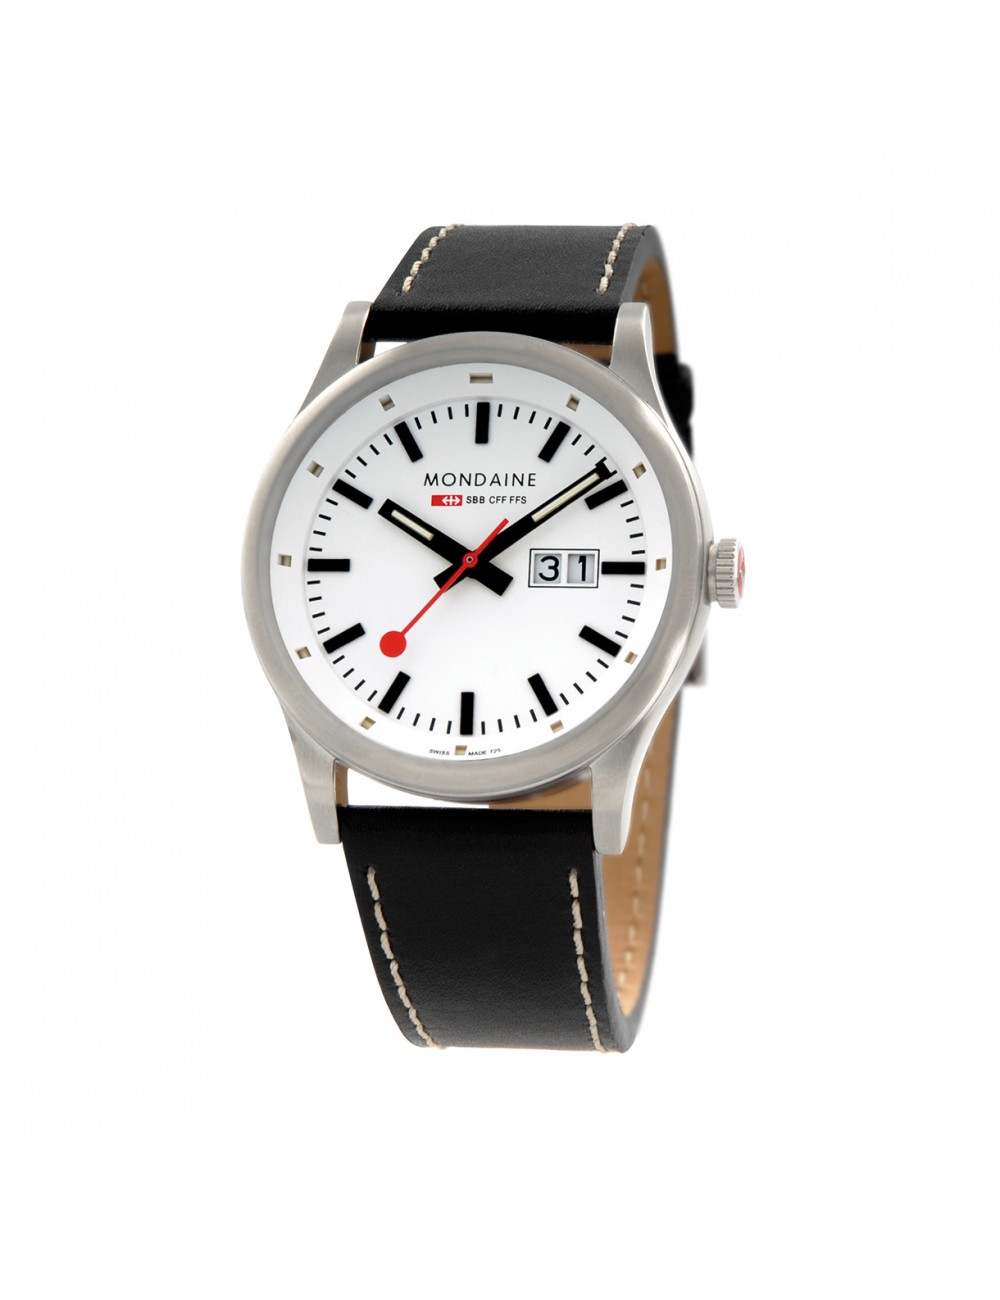 valores Clancy patio de recreo comprar Reloj suizo Mondaine SBB Sport Big Date (41mm), masculino, cuarzo